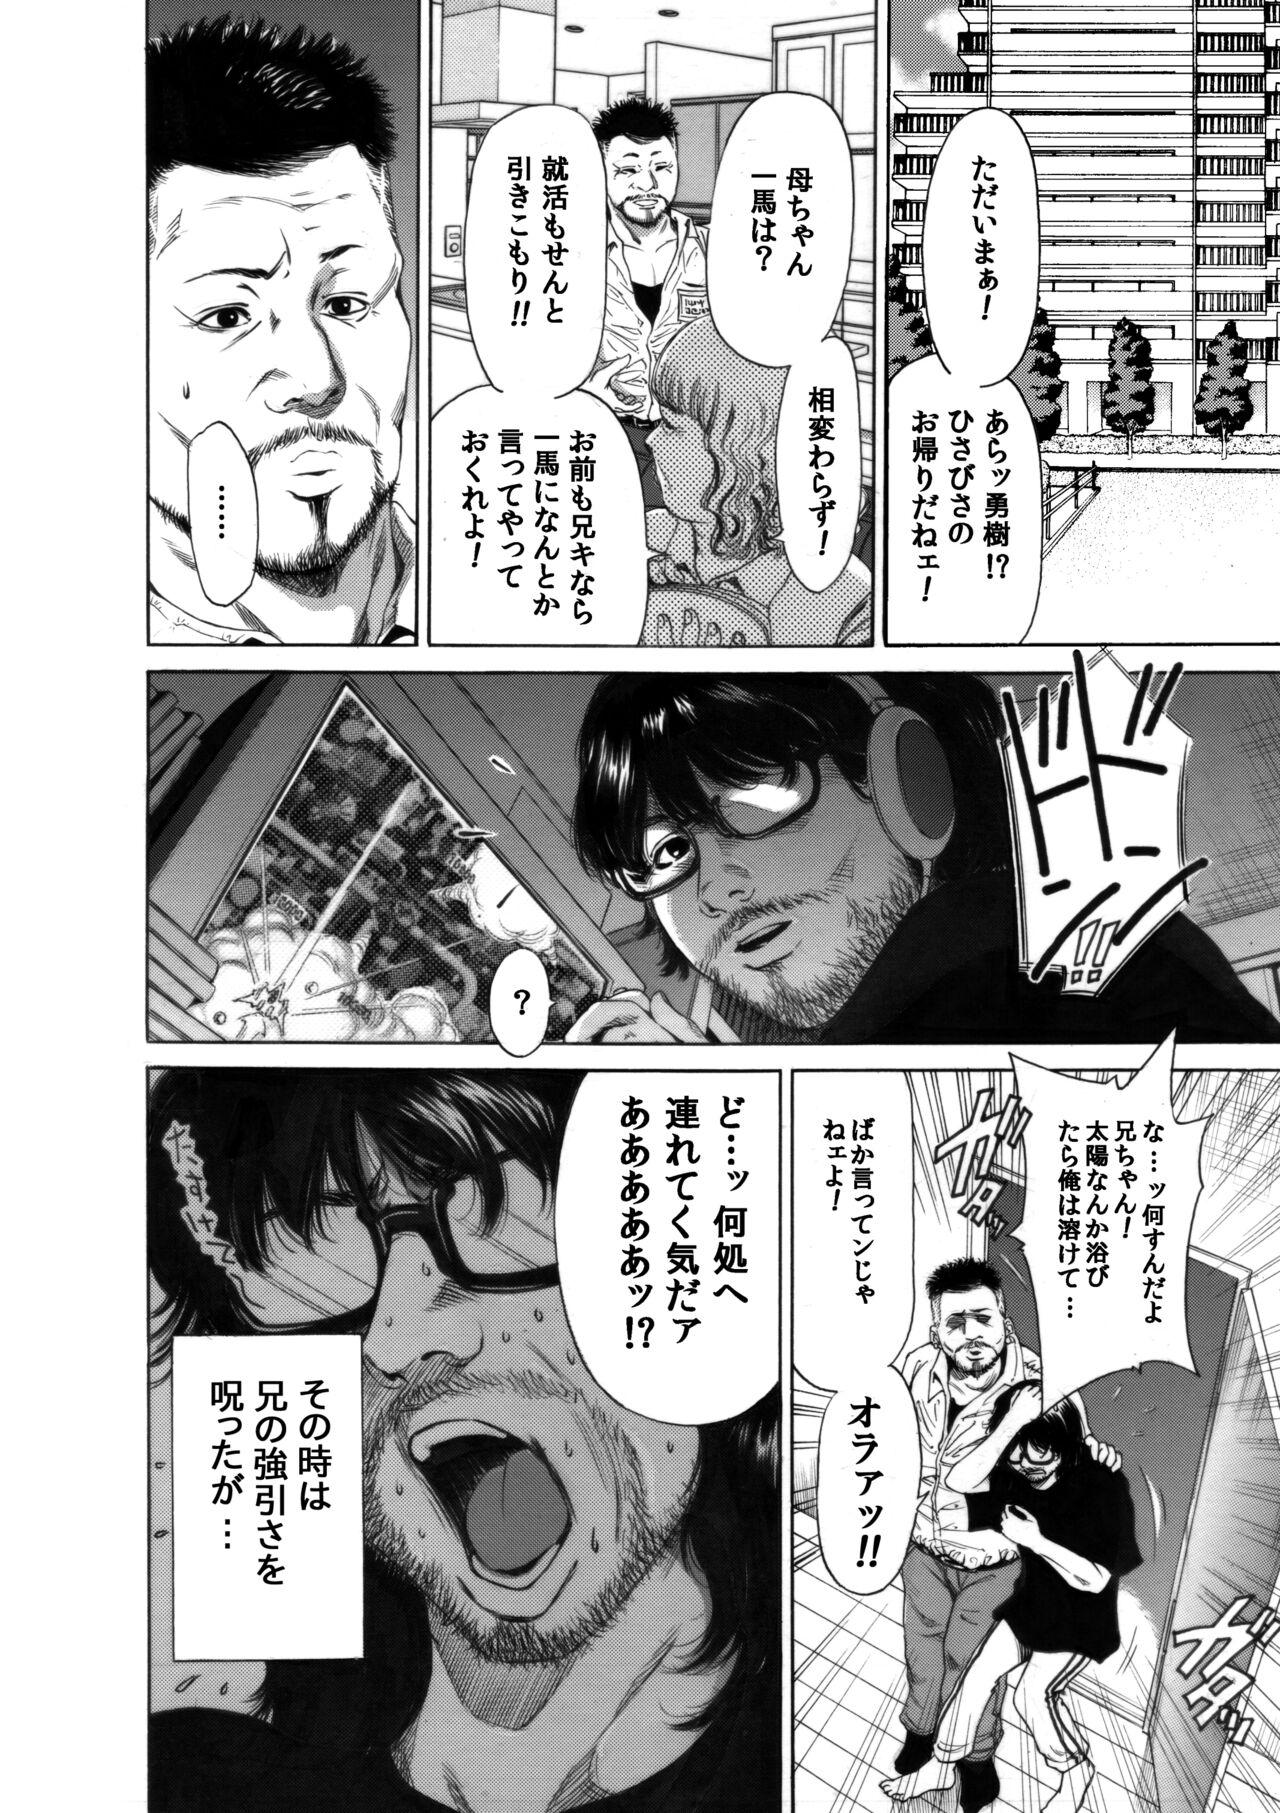 Affair [Okumori Boy & Team Gyaru Paipai] Okumori boui shoki ero manga-shuu “san-biki ga yaru” (tsuujou-ban) - Original Mexicana - Page 8